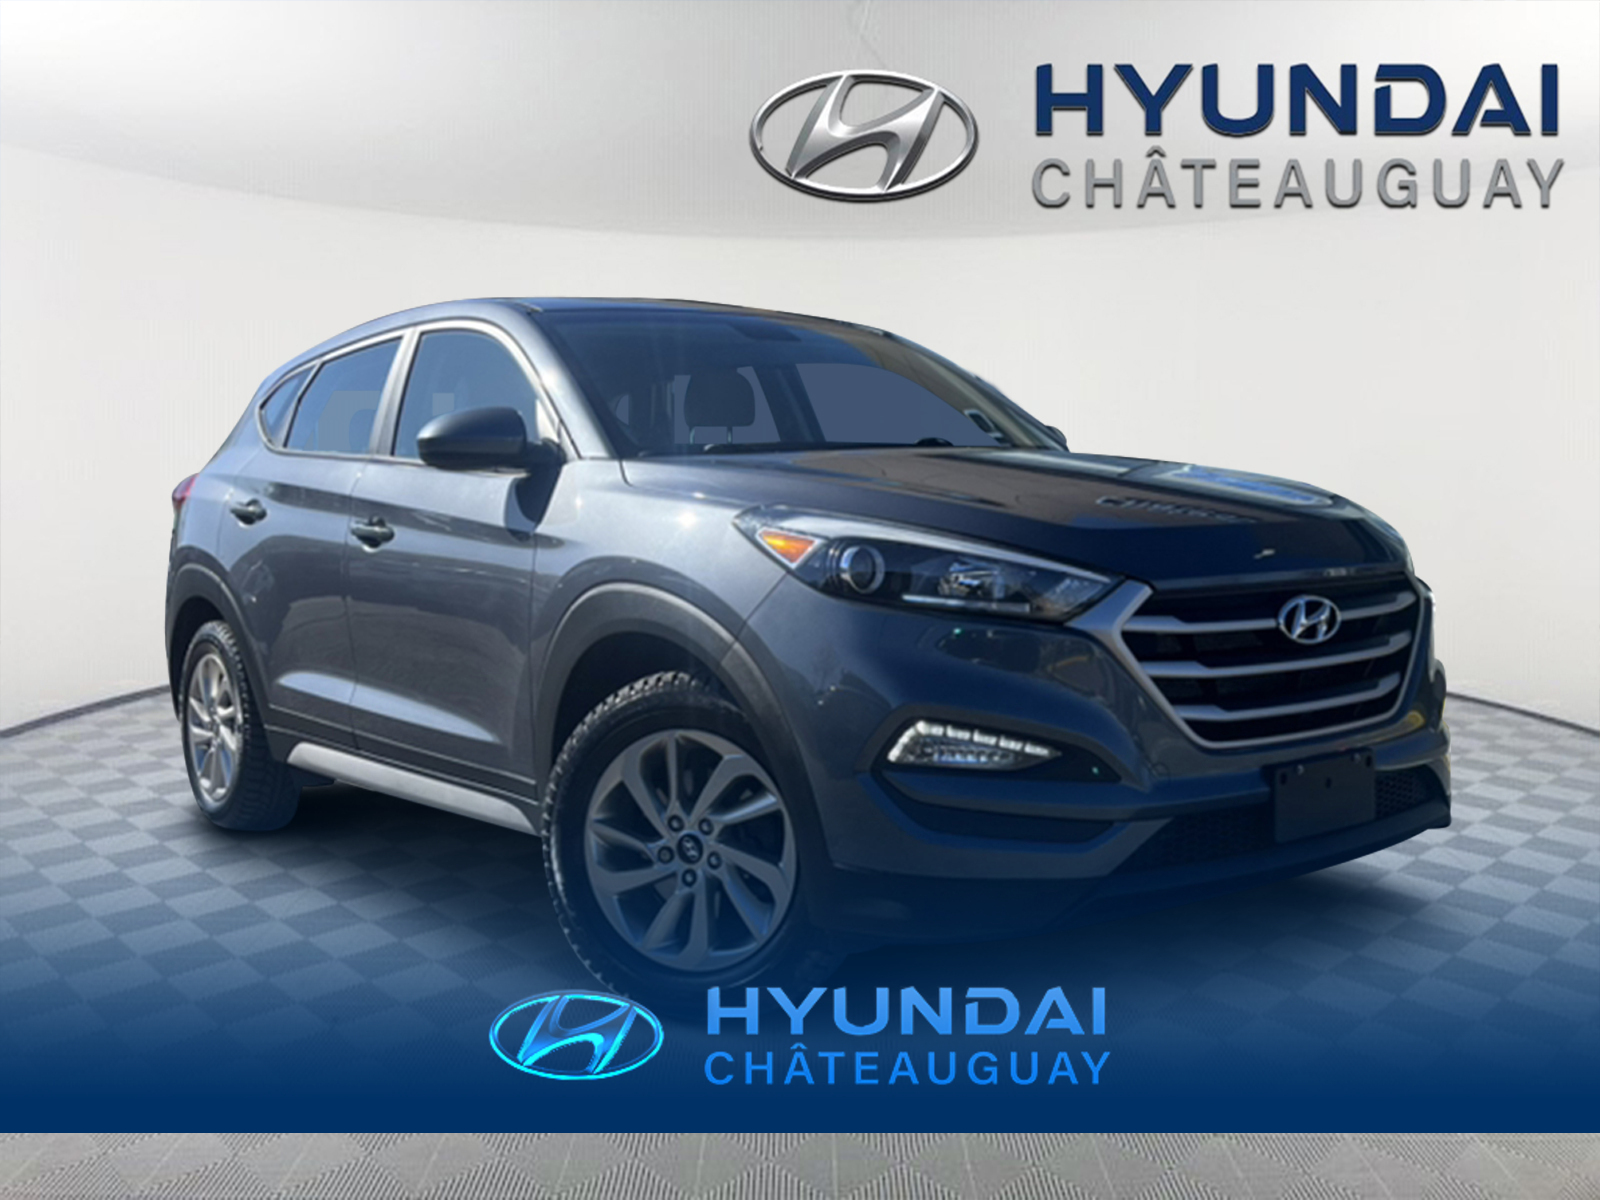 2017 Hyundai Tucson GL, AWD, BLUETOOTH, CRUISE, SIÈGES CHAUFFANTS, MAG